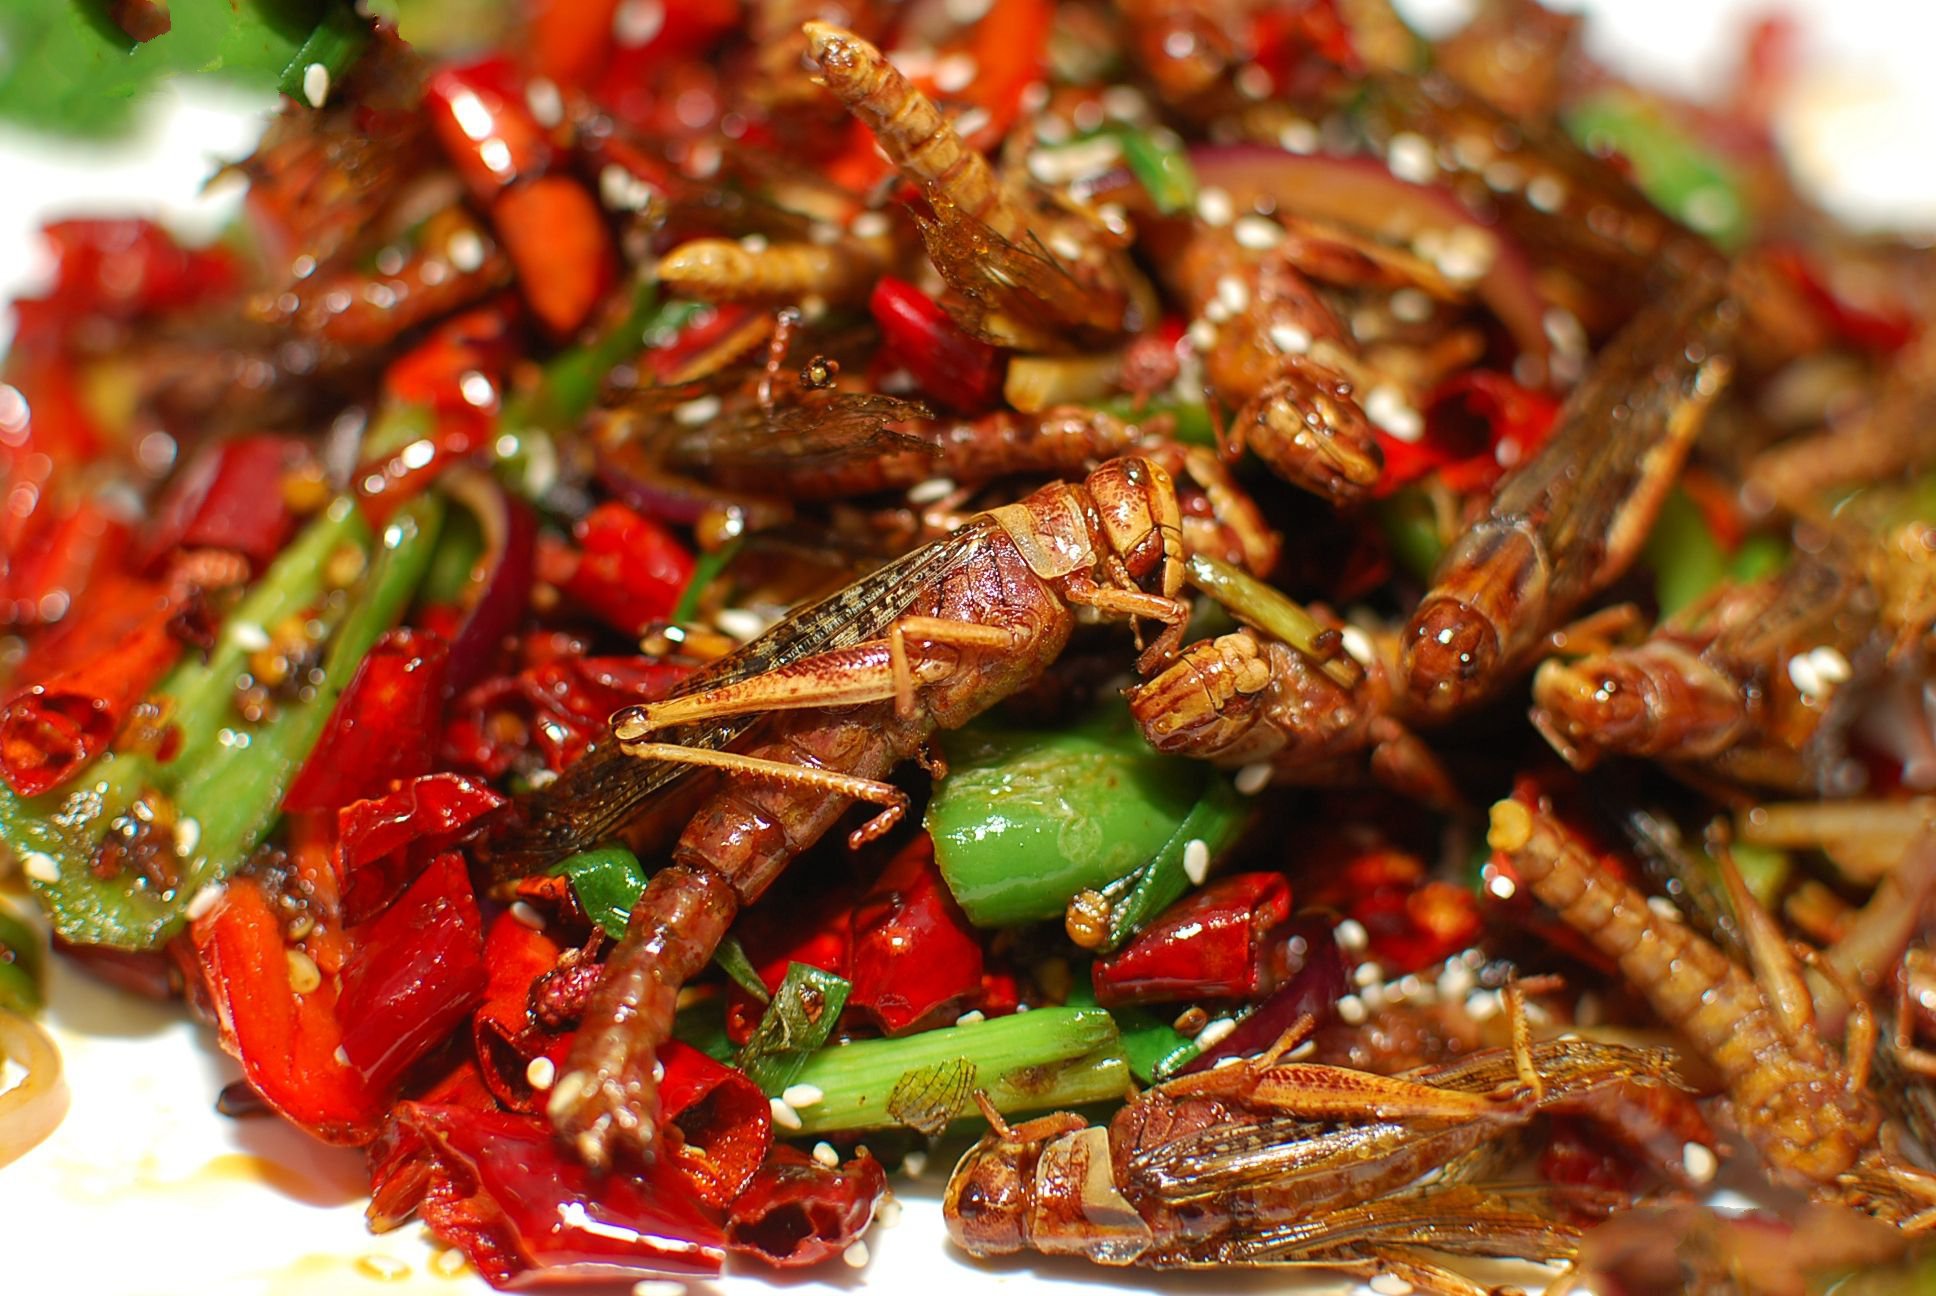 十分好吃,味道很香脆,现在在中国,油炸蚂蚱成为不可或缺的美食,吃一口